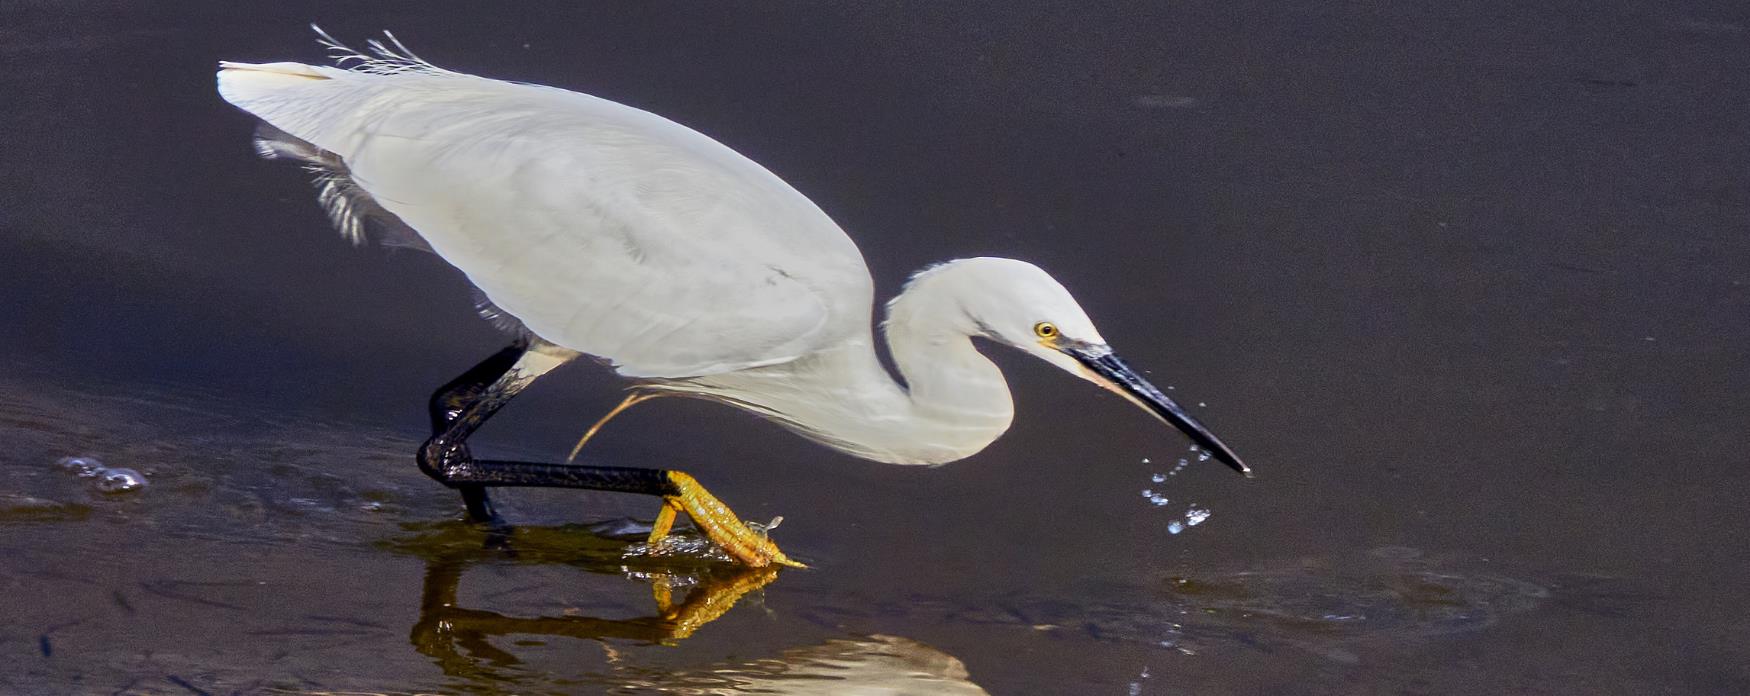 A Little Egret bird wading through shallow water